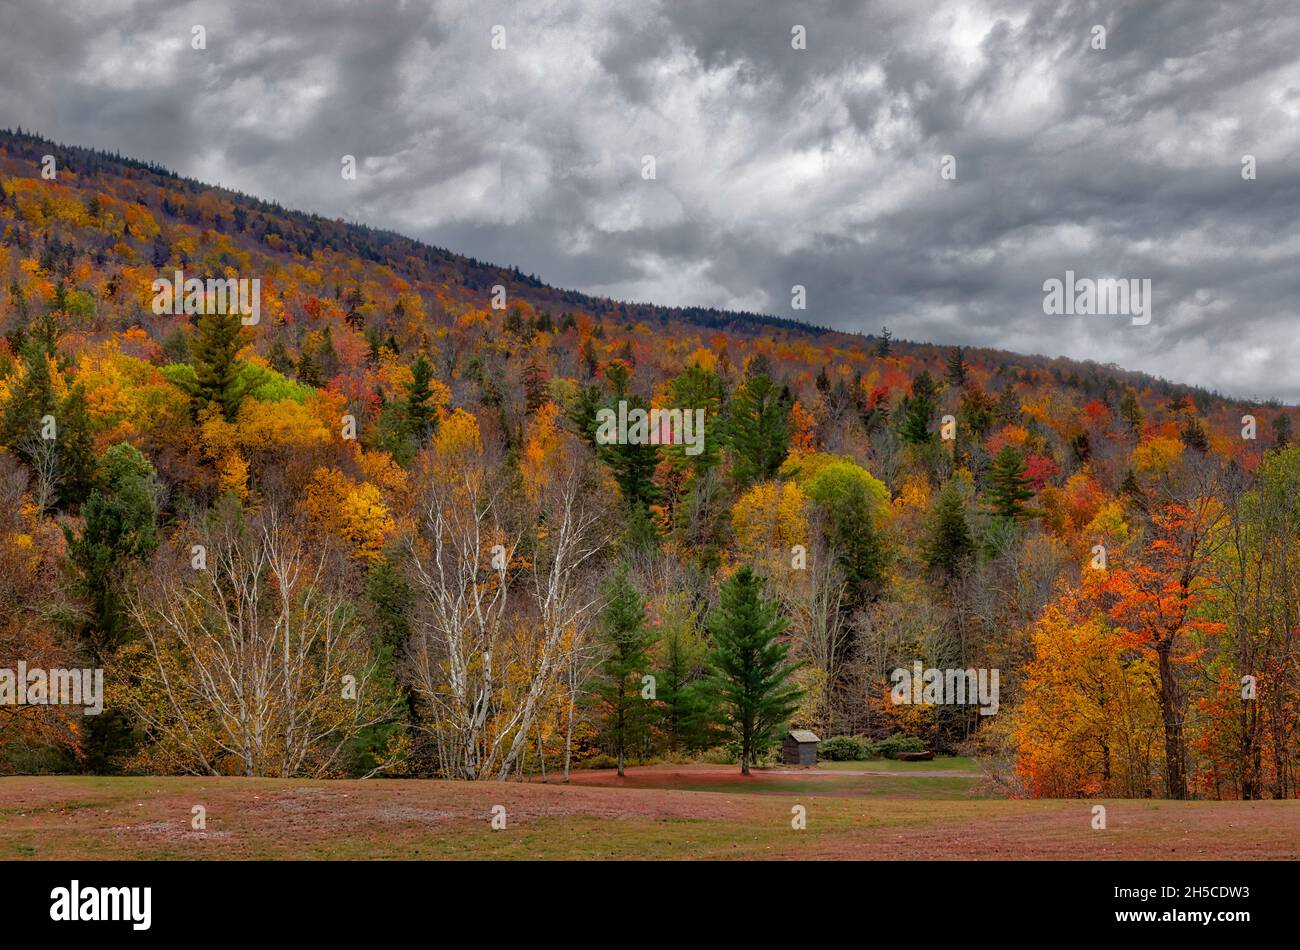 Hunter Mountain Catskill NY - farbenfrohe Herbstfärbung bedeckt den Hunter Mountain in der Catskill-Region des Hudson Valley in New York. Ein kleiner Schuppen kann b Stockfoto